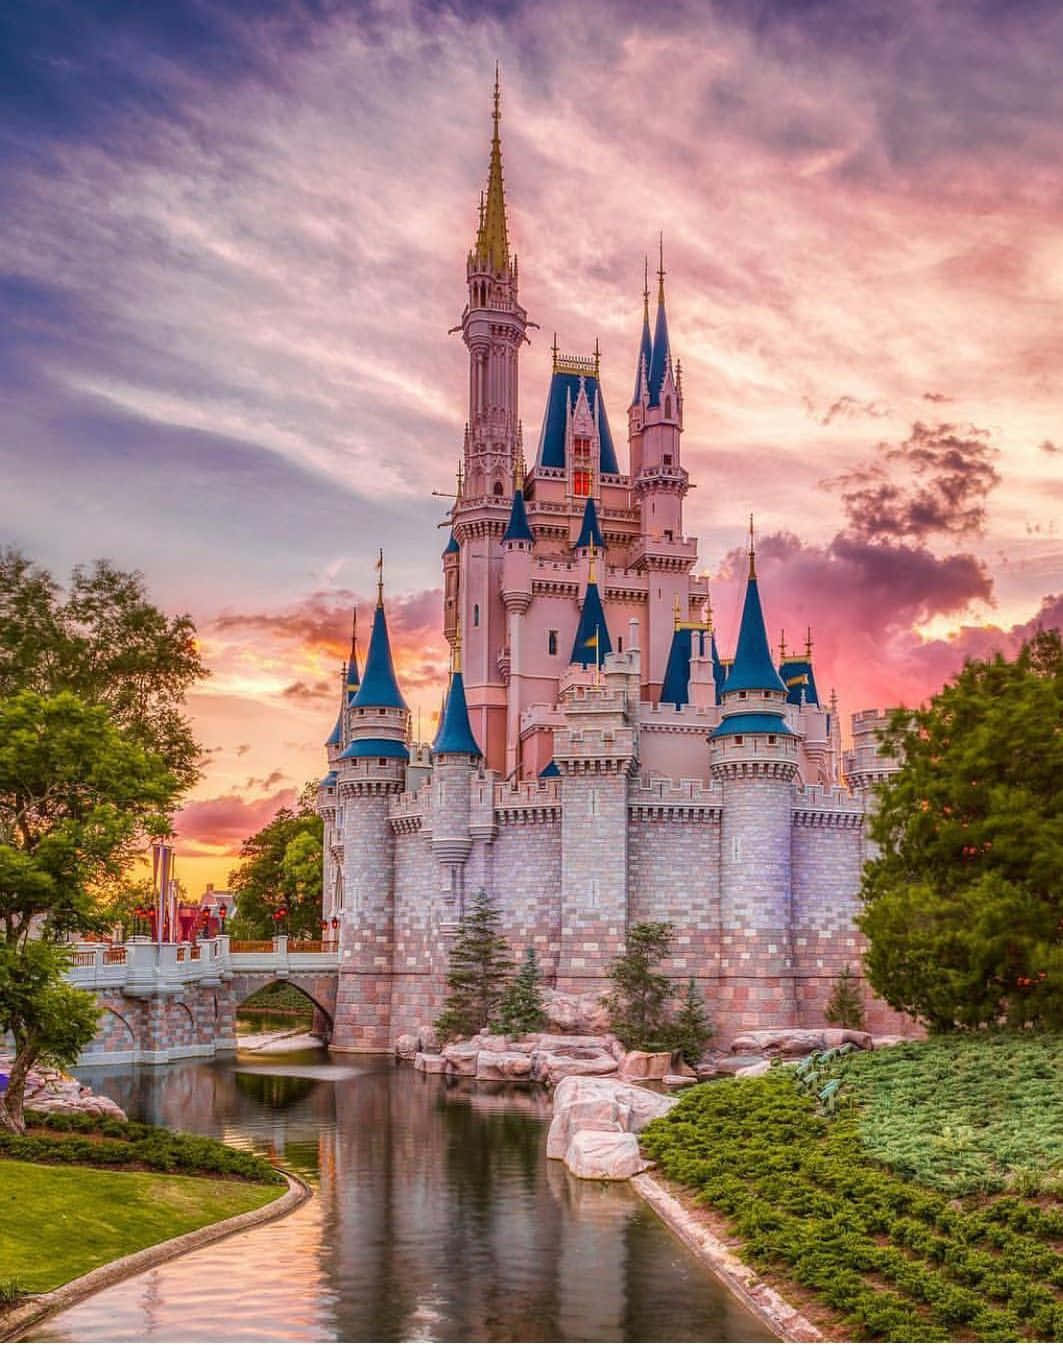 Unavista Affascinante Del Castello Di Disney